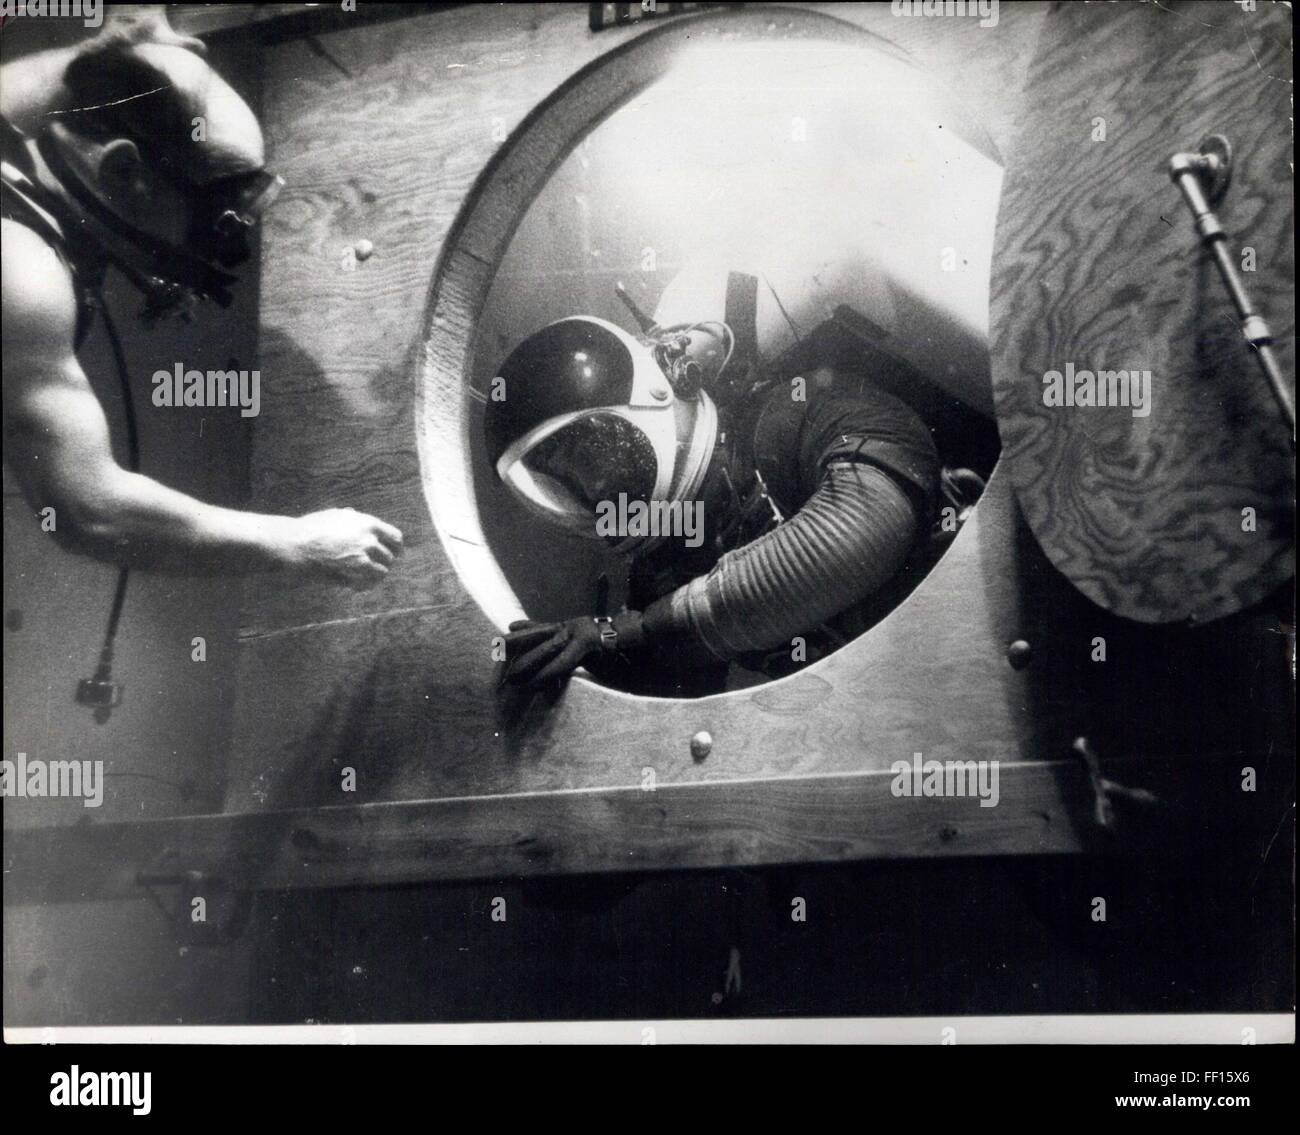 1957 - L'espace sous-marin - Formation : Pour obtenir les effets de l'apesanteur dans l'espace, les astronautes peuvent maintenant e formés - sous l'eau. En fonctionnant dans des conditions de flottabilité naturelle, ils apprennent à contrôler et adapter leurs mouvements corporels dans Zatokrev;y environnements gravitationnels. Au centre astronautique Boeing aux Etats-Unis, les réactions sont soigneusement compilés et analysés.Les exercices sont réalisés en stricte conformité avec la plus stricte avec des mouvements nécessaires de spaceman dans l'espace lointain voyage. La photo montre la manooevres Astronaute de s'écarter par une trappe sous-marins semblables dans des dimensions à un Banque D'Images